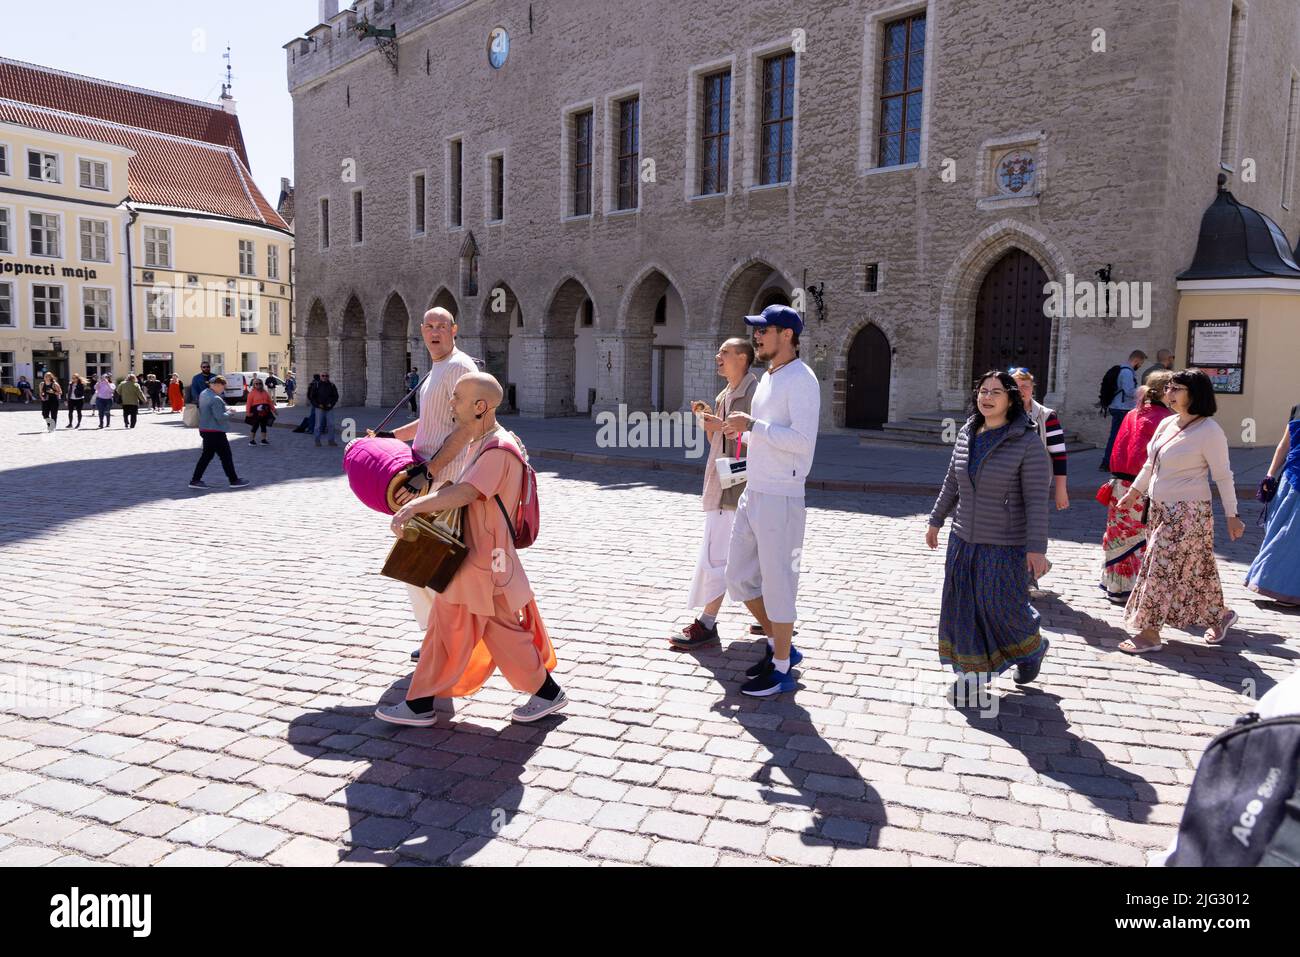 Société internationale pour la conscience Krishna, organisation religieuse Hare Krishna - les gens marchant et chantant, vieille ville de Tallinn, Estonie Europe Banque D'Images